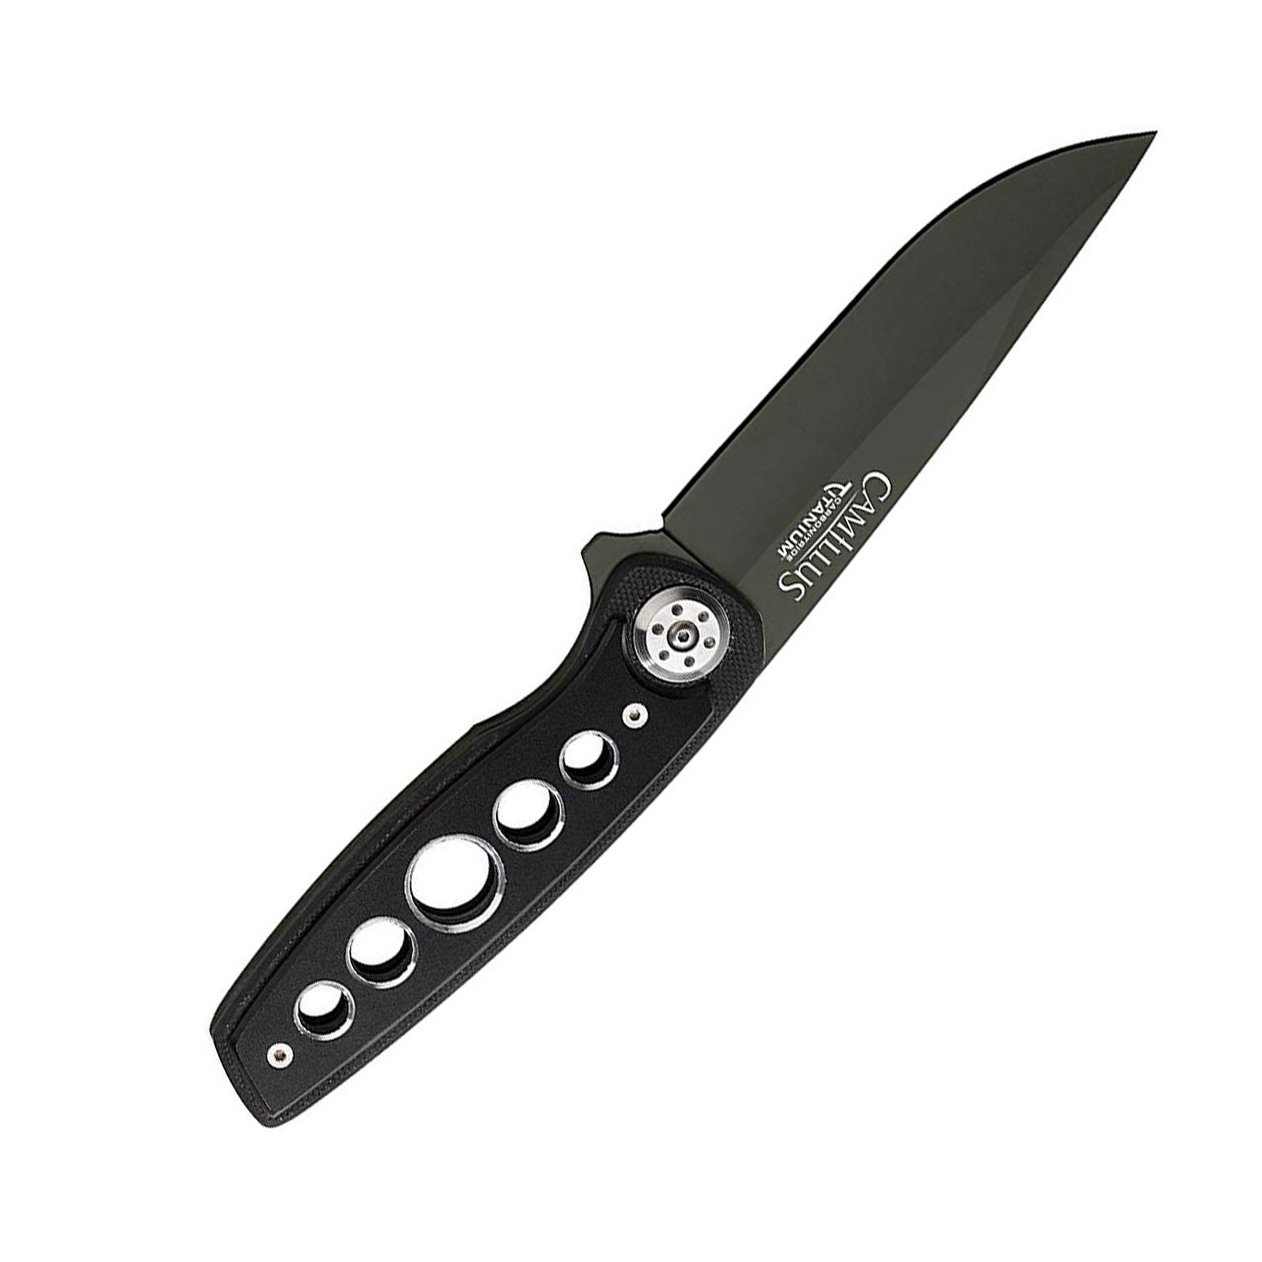 фото Нож с фиксированным клинком camillus edc, сталь aus-8, рукоять термопластик grn, чёрный